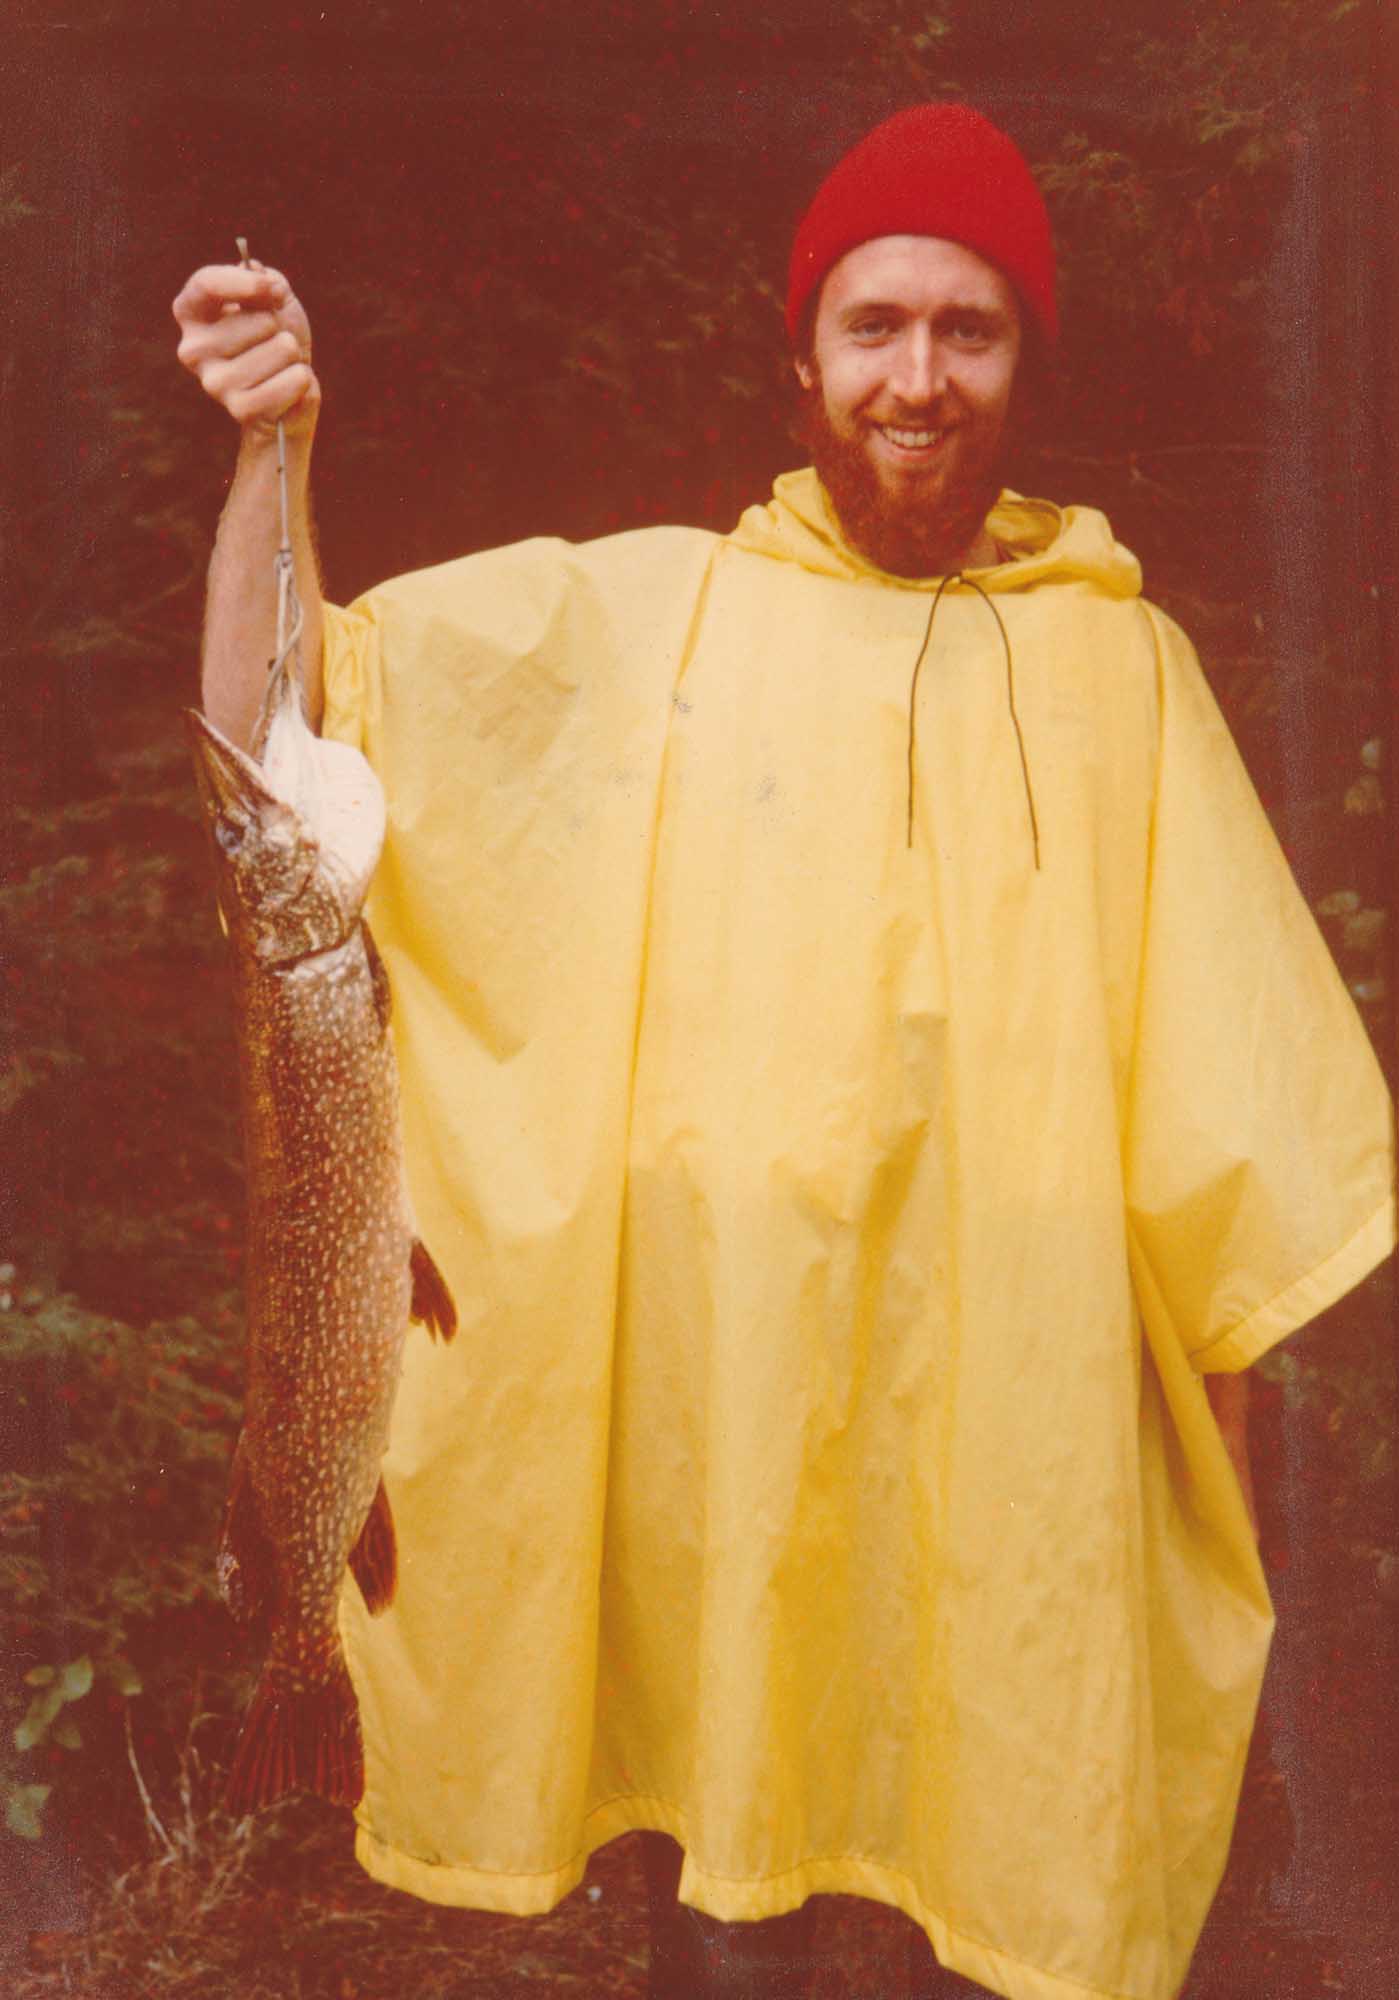 John Pauly with fish